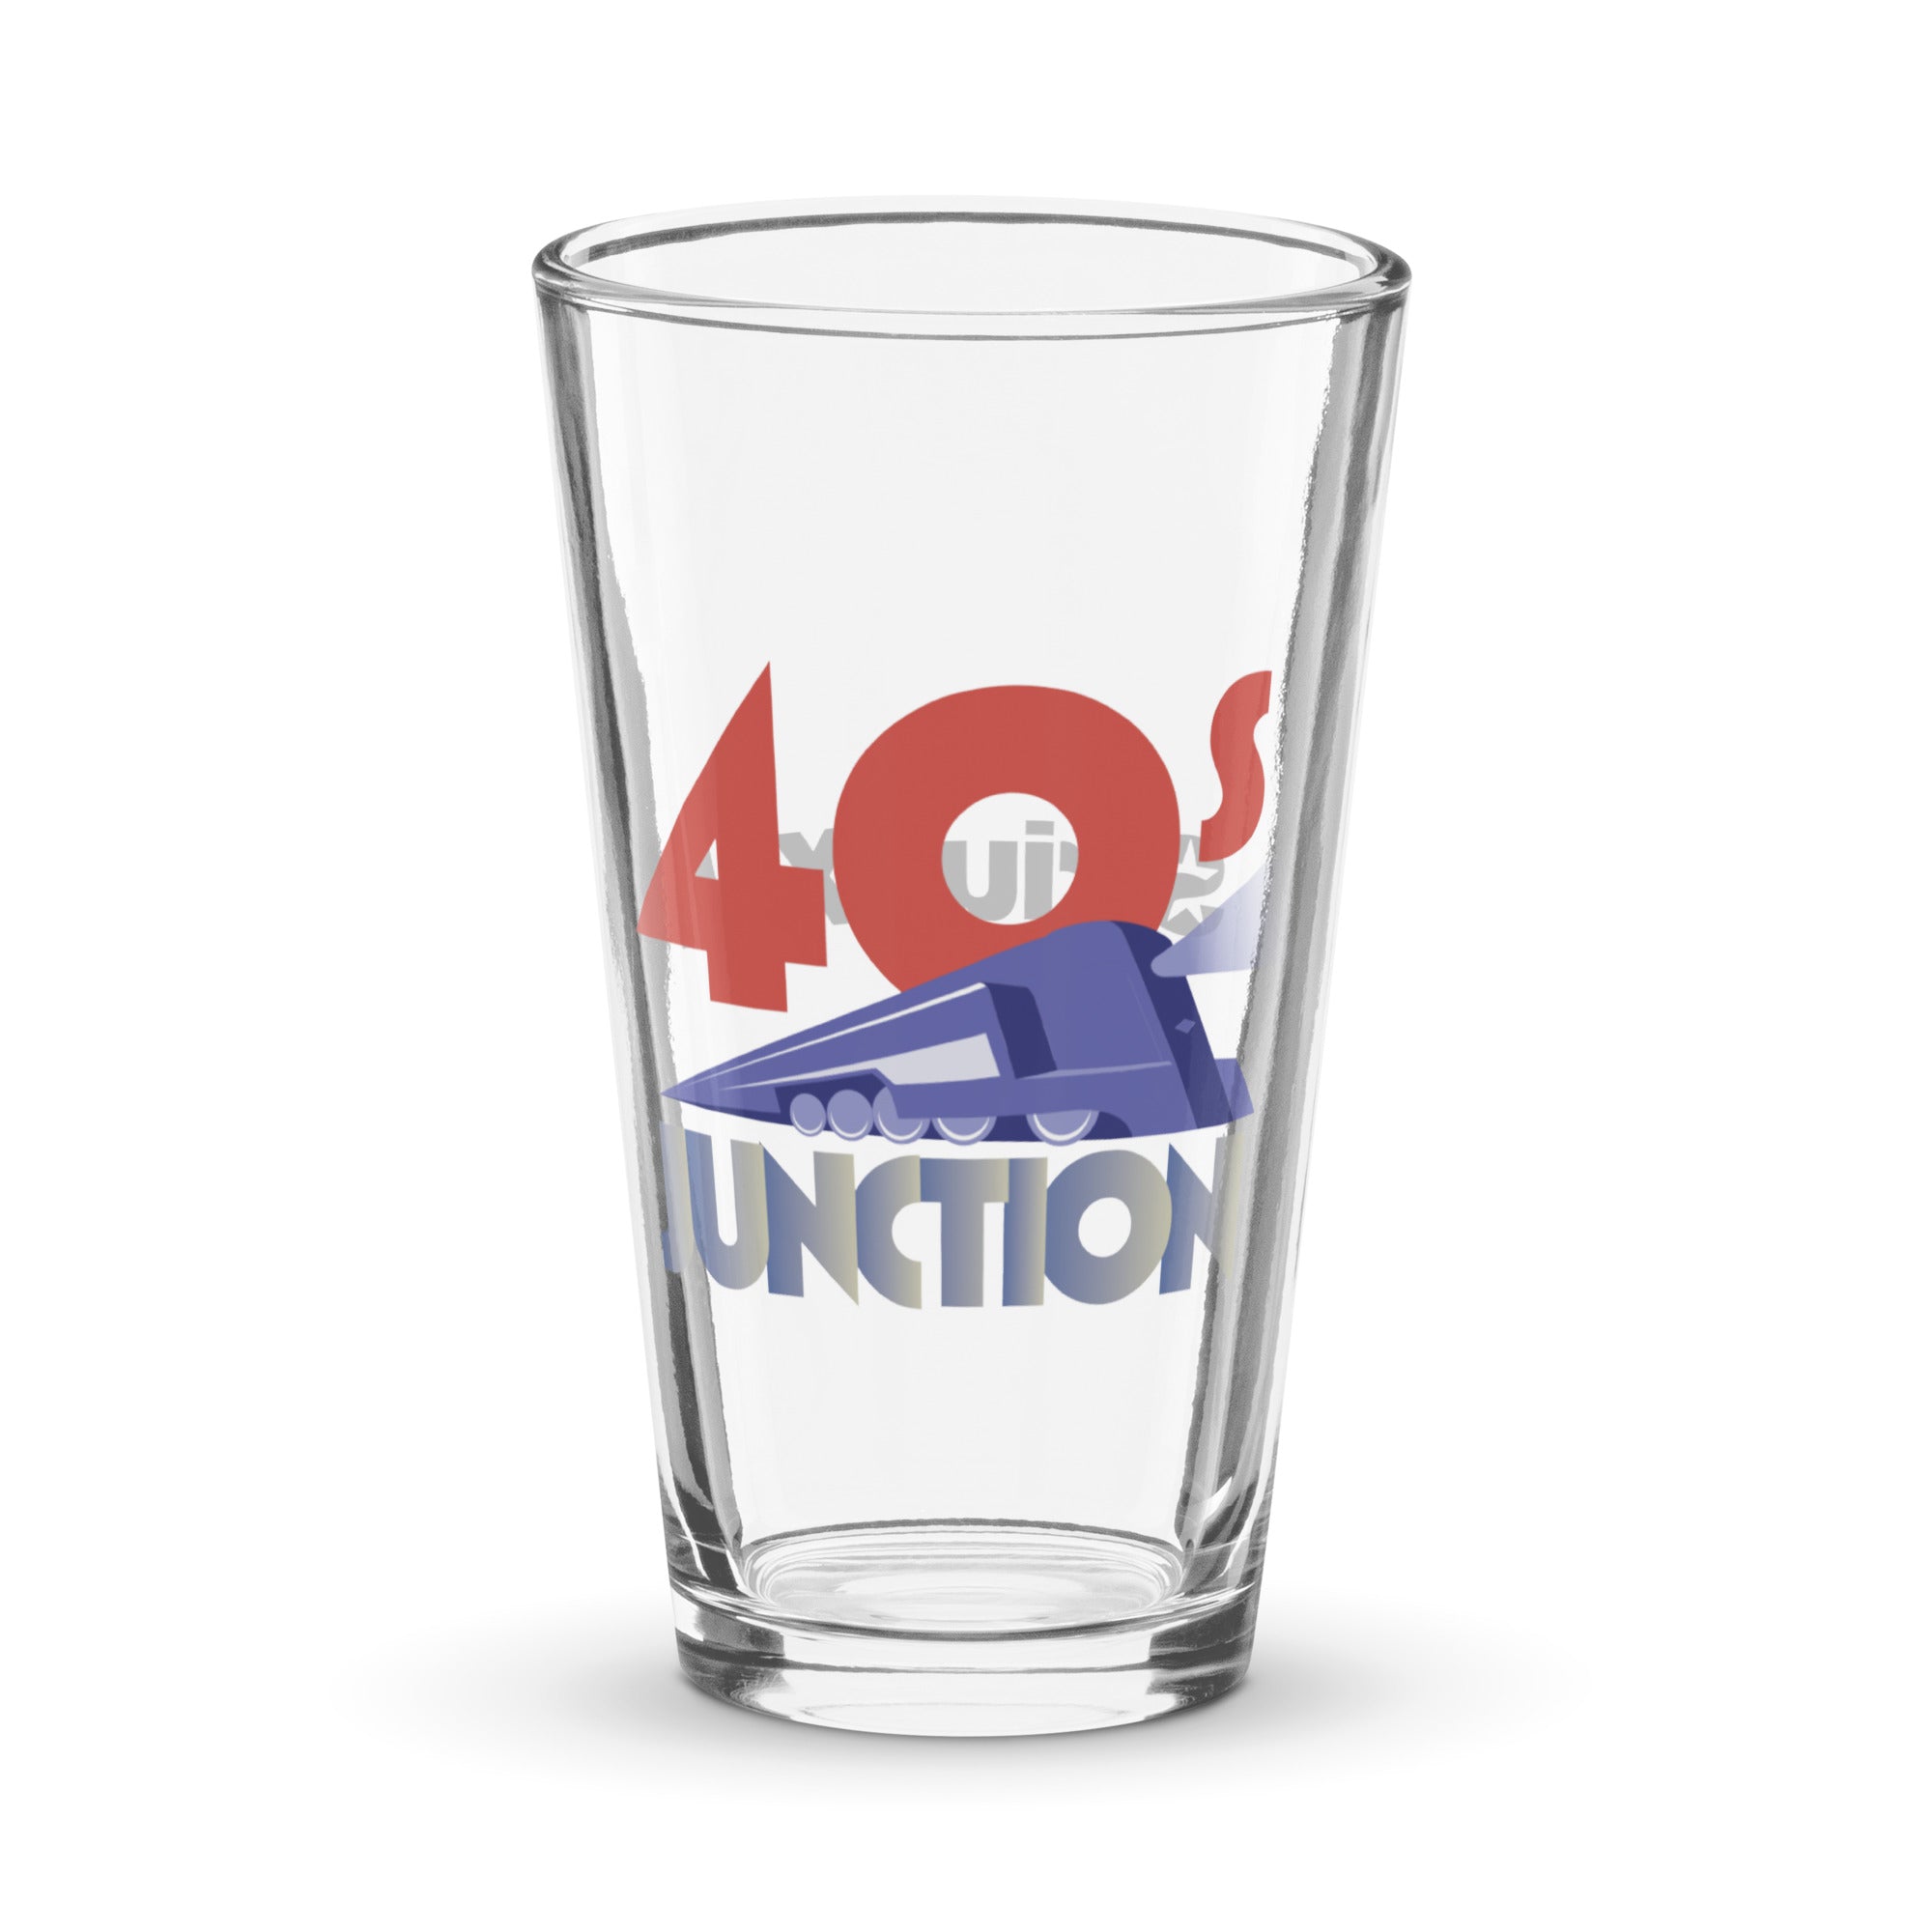 40s Junction: Pint Glass